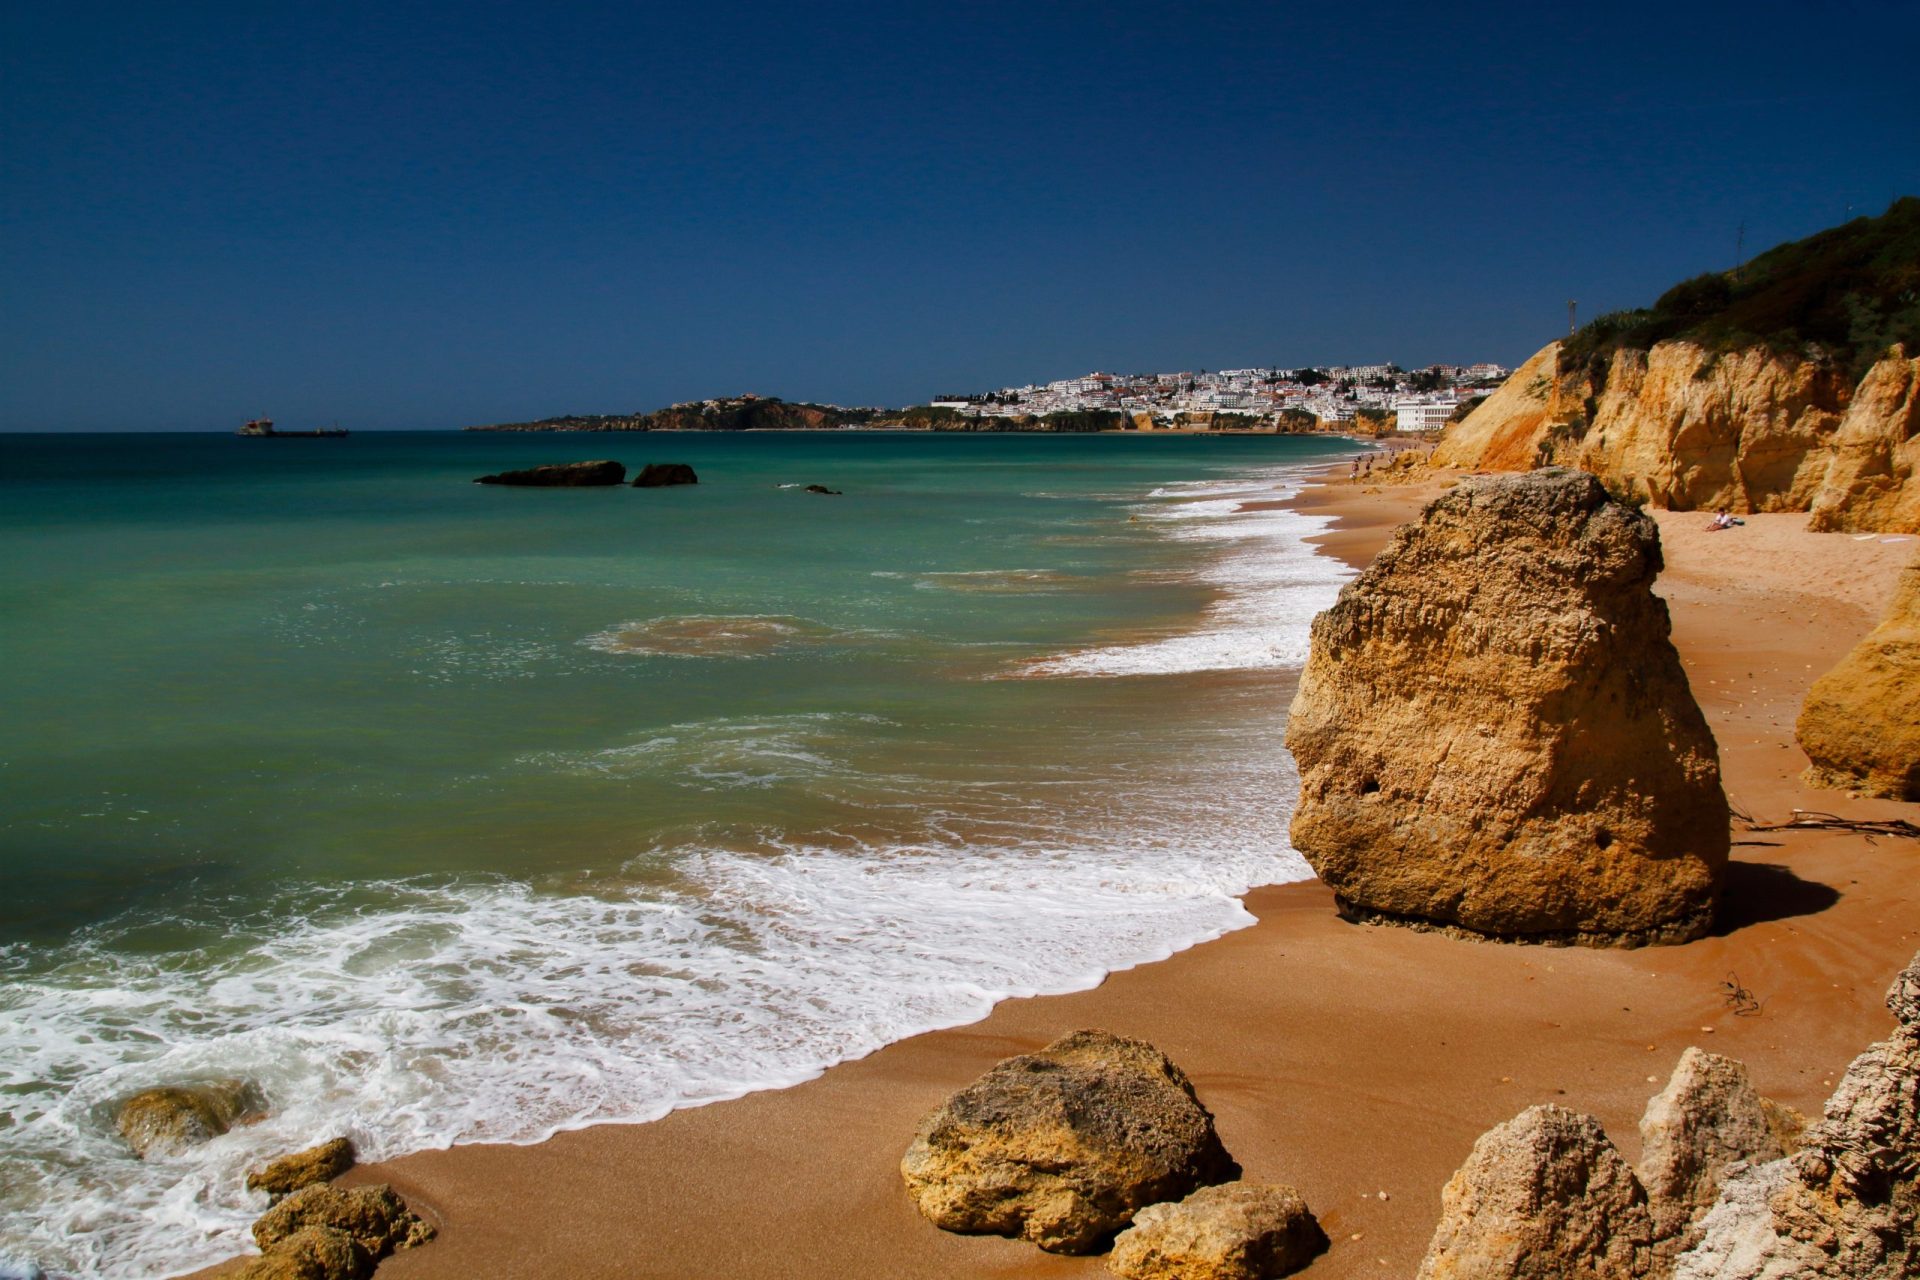 Taxa de ocupação por quarto no Algarve foi de 72,7% em outubro